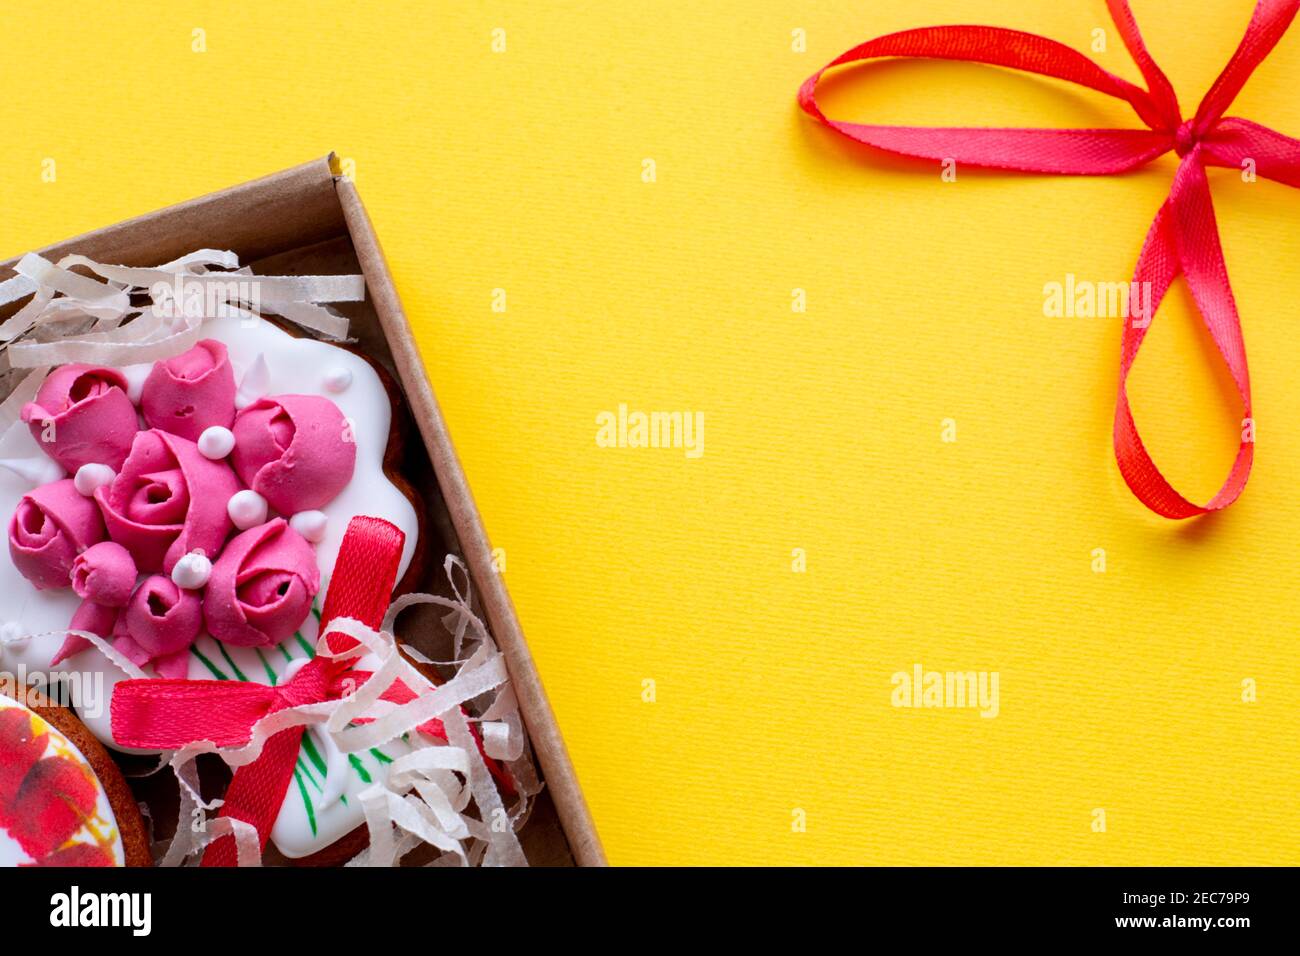 Gelber Hintergrund mit einer roten Schleife und einer Schachtel mit dekorativen Cookies, Vorlage für Text Stockfoto